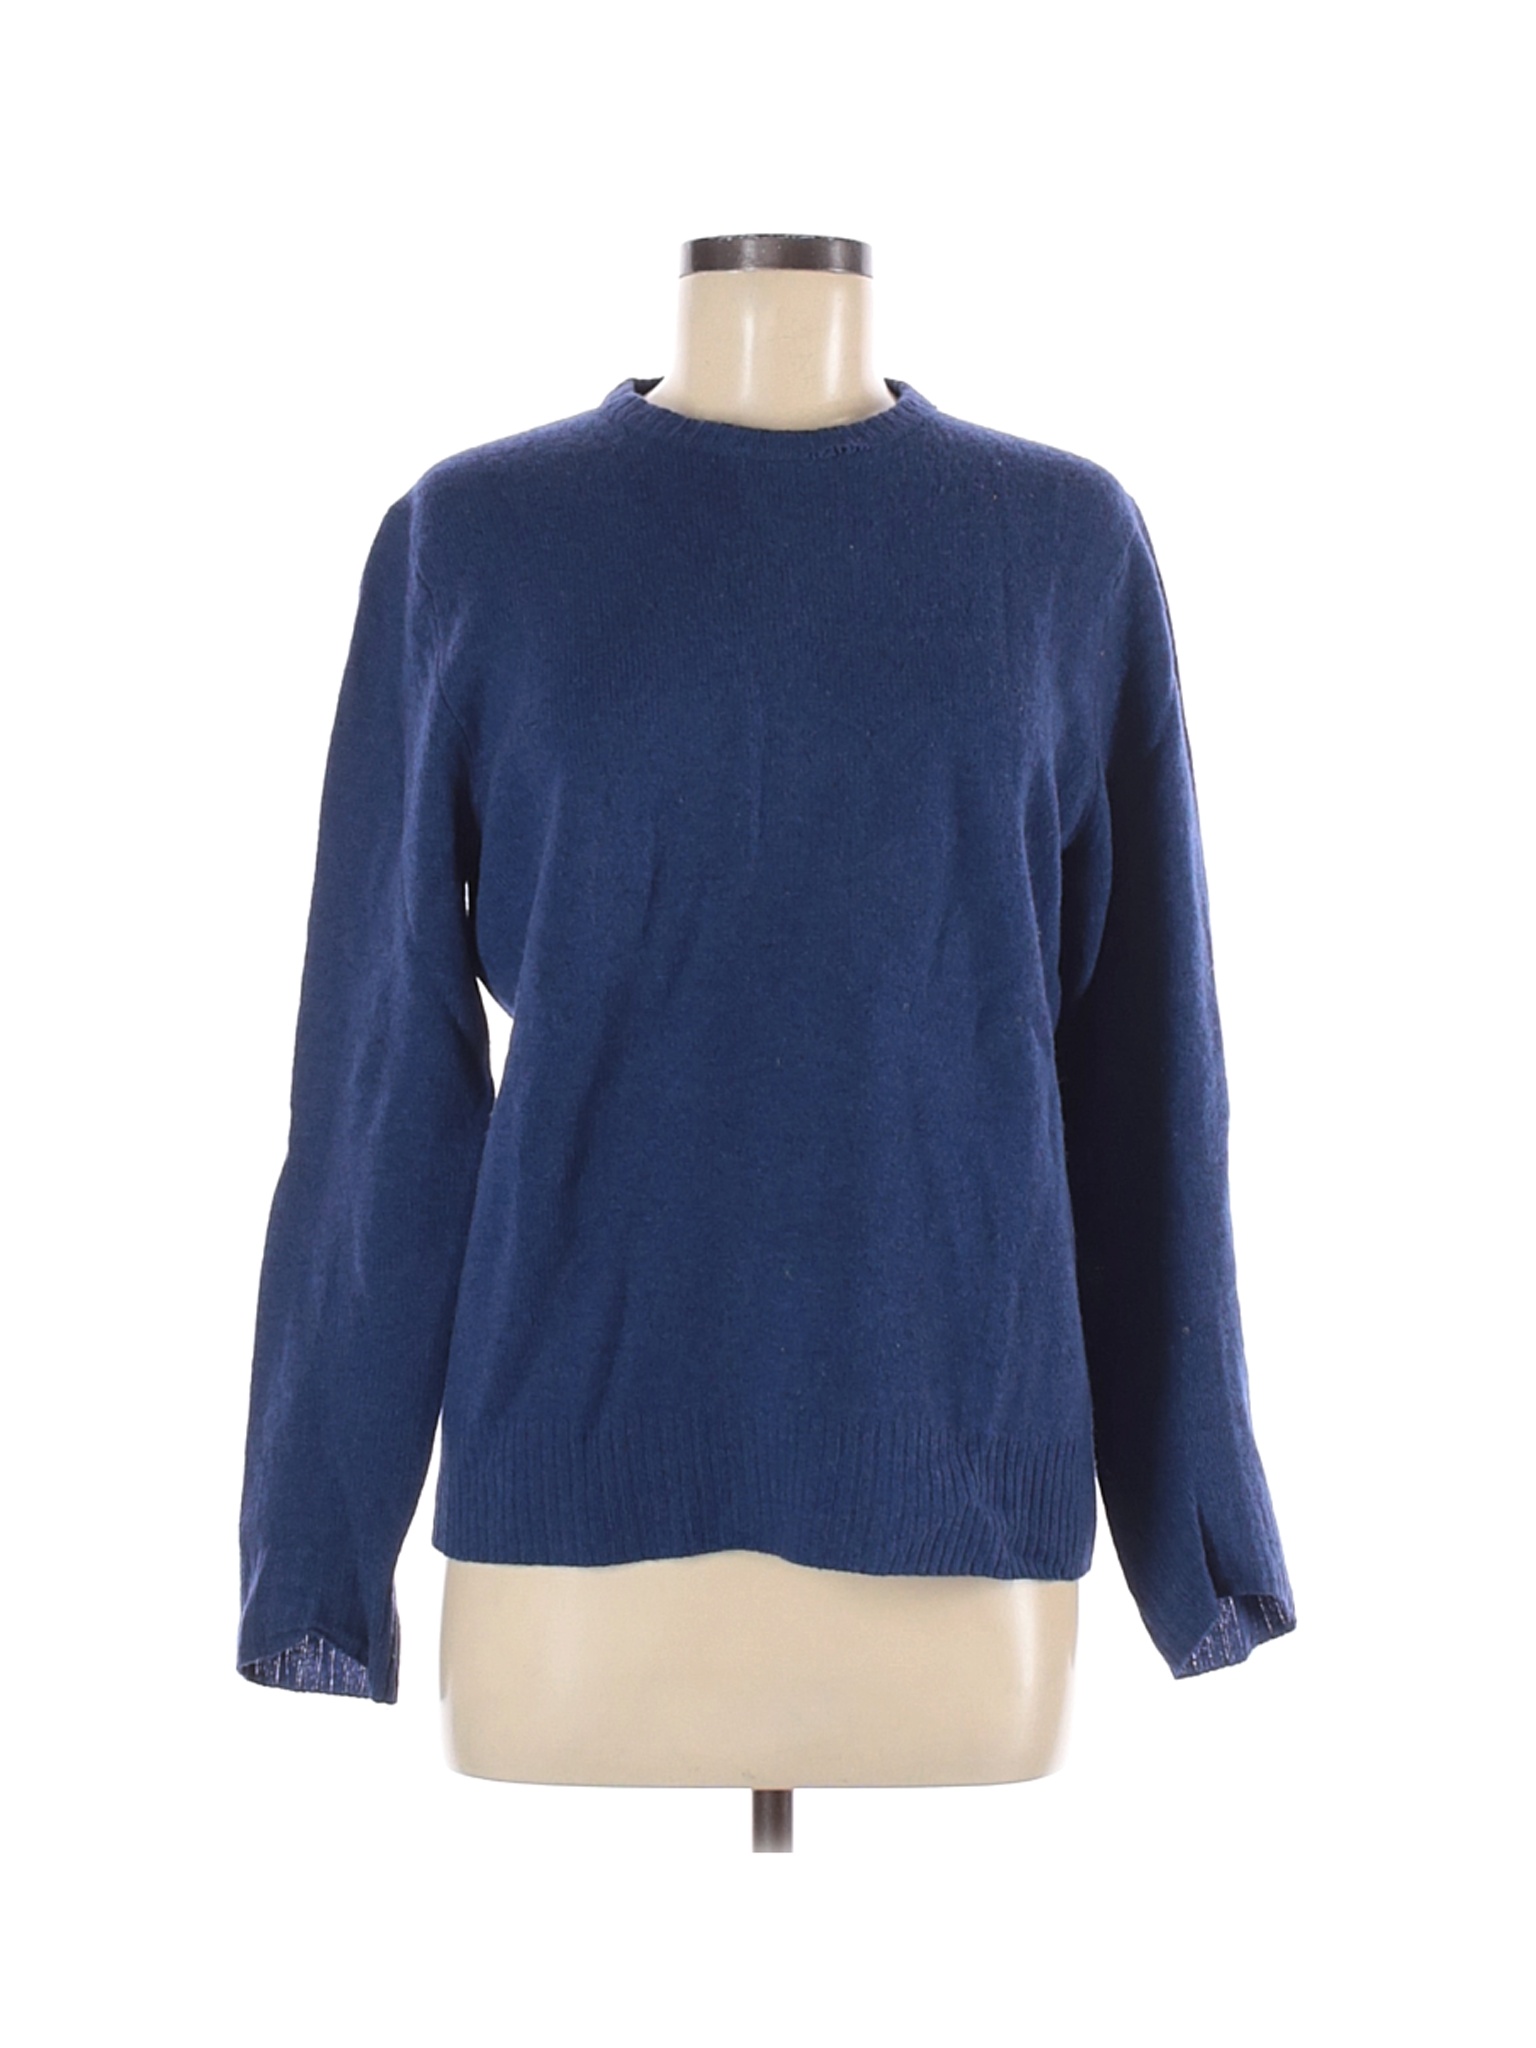 Club Monaco Women Blue Wool Pullover Sweater S | eBay